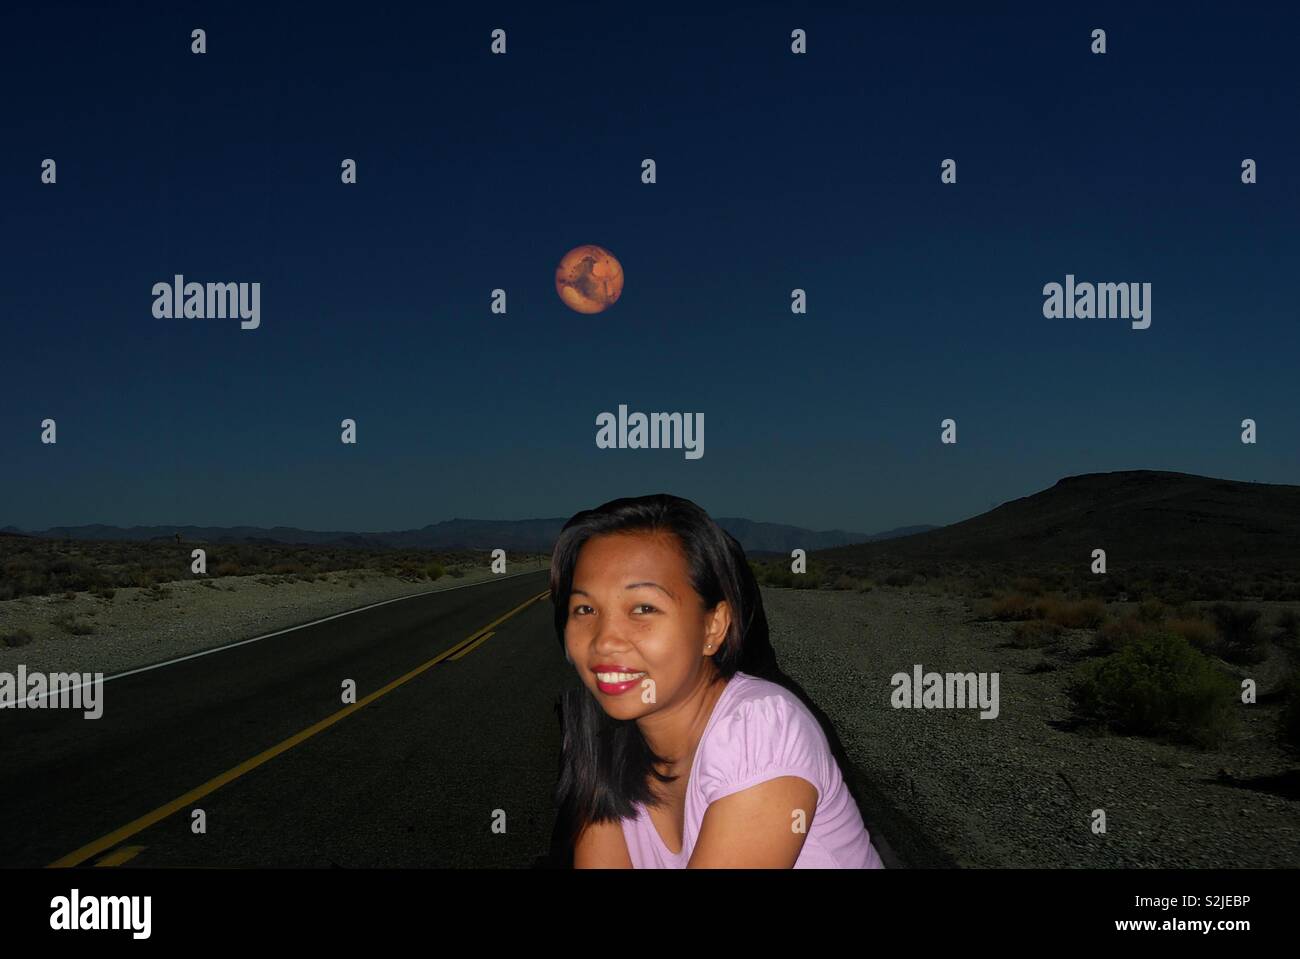 Combiner deux images : fille est à Cebu aux Philippines et l'autoroute de Danao est IH10 entre San Antonio et El Paso, Texas - arrêter de saisir la lune rouge sang. Nikon D3200. Banque D'Images